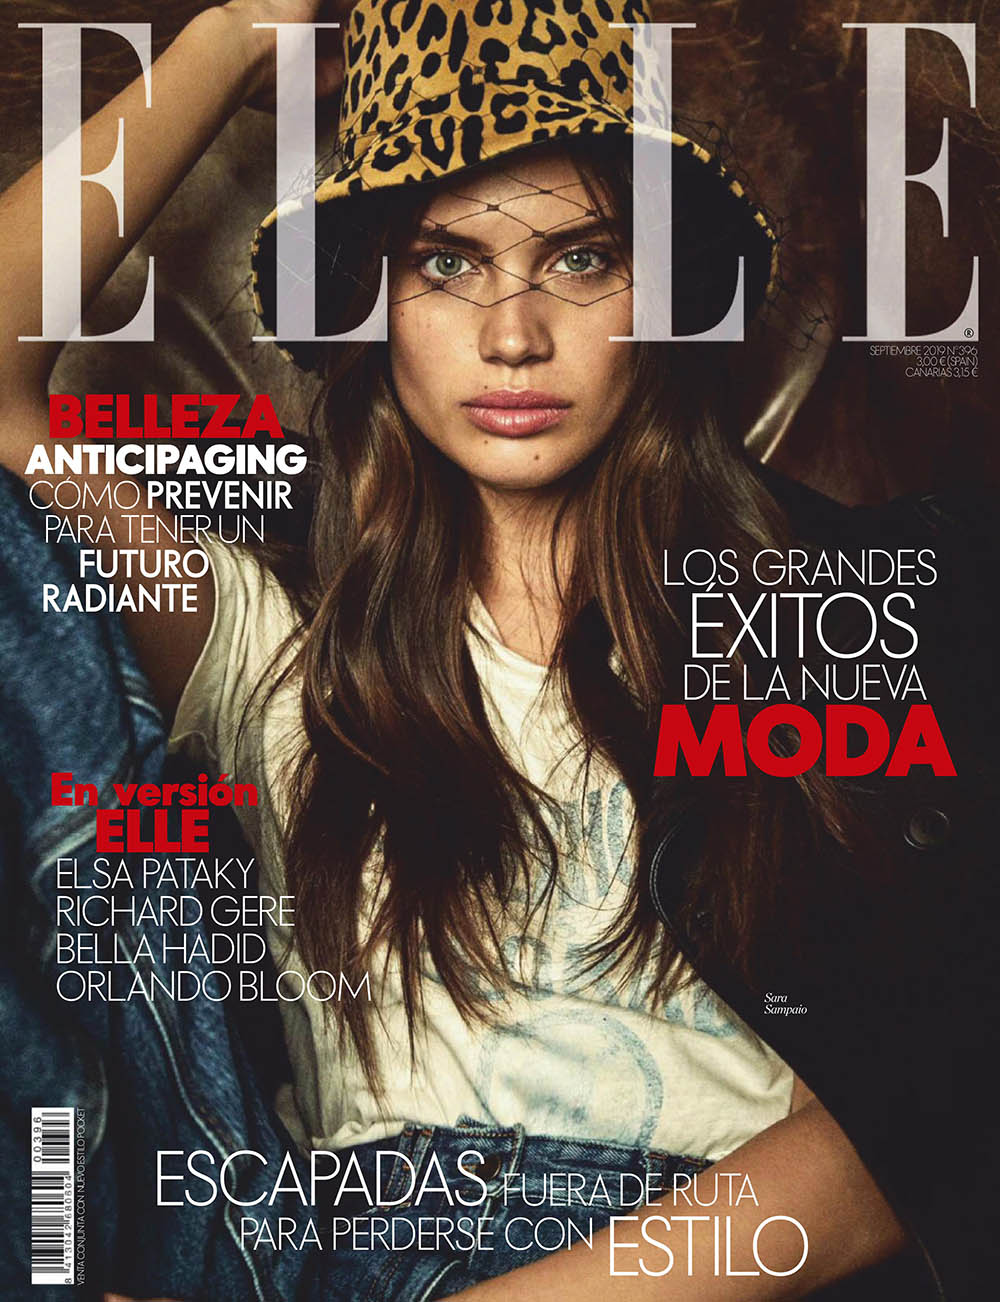 Sara Sampaio covers Elle Spain September 2019 by Mario Sierra